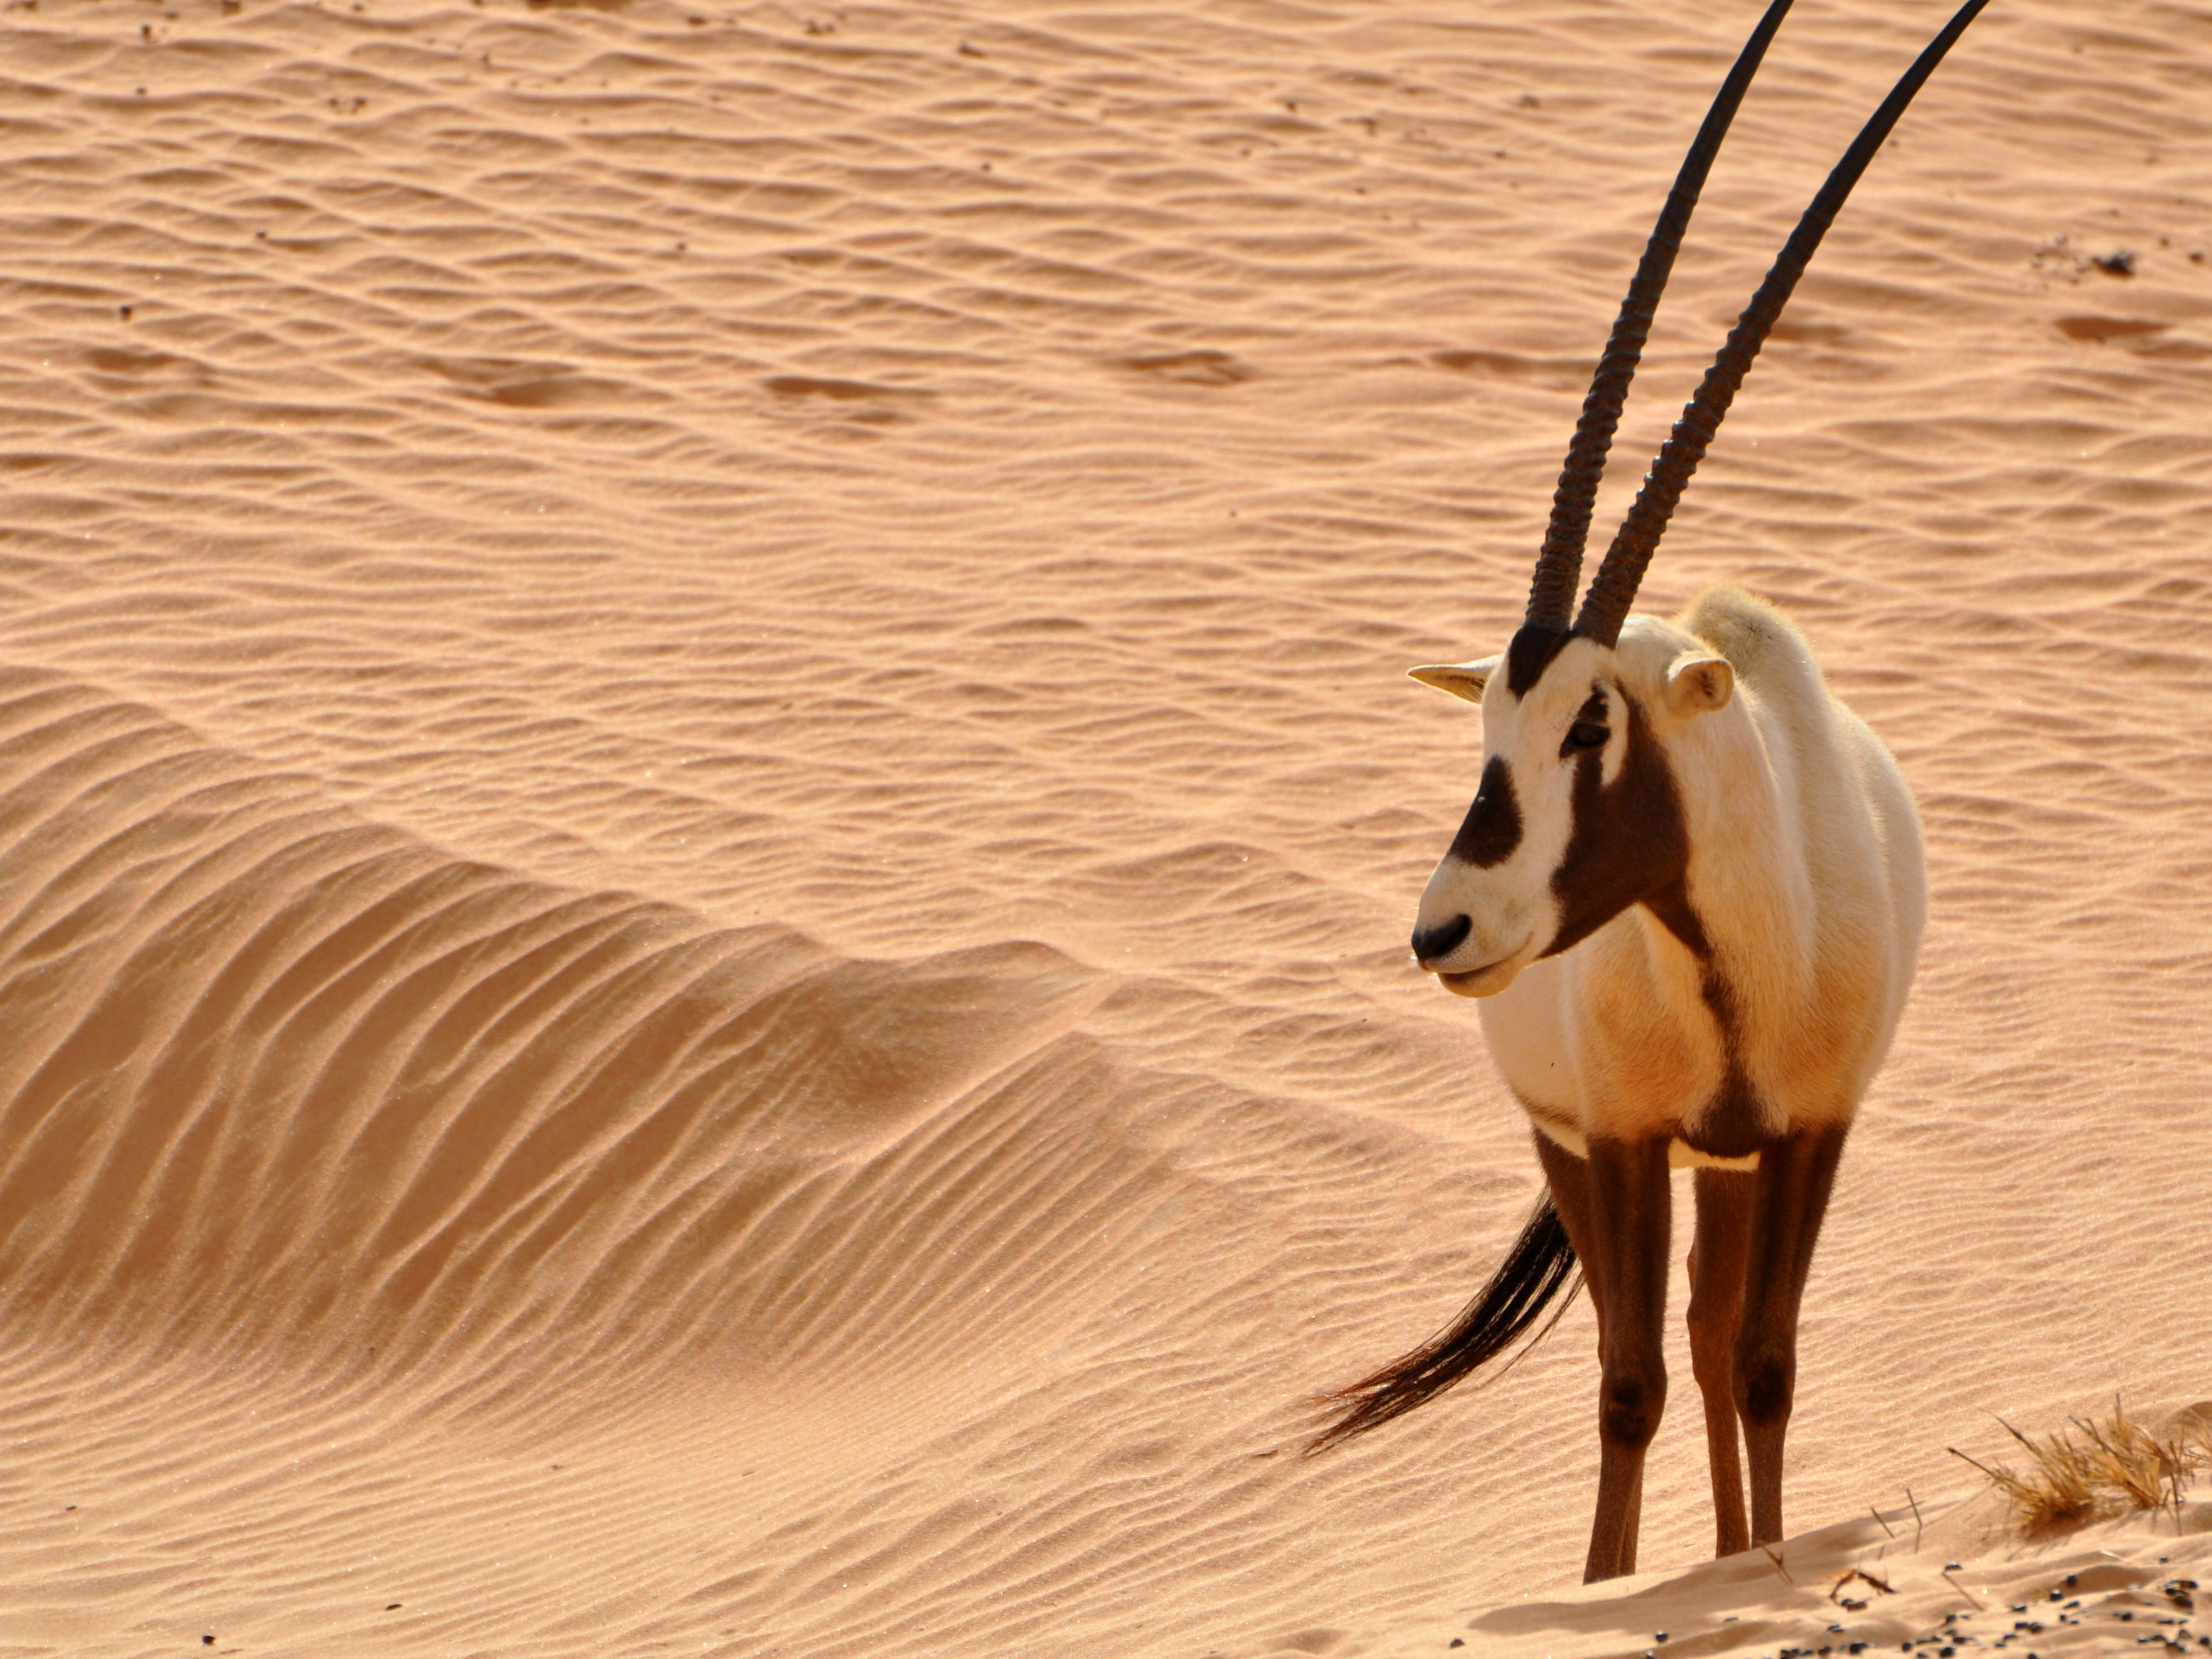 arabian adventures dune buggy